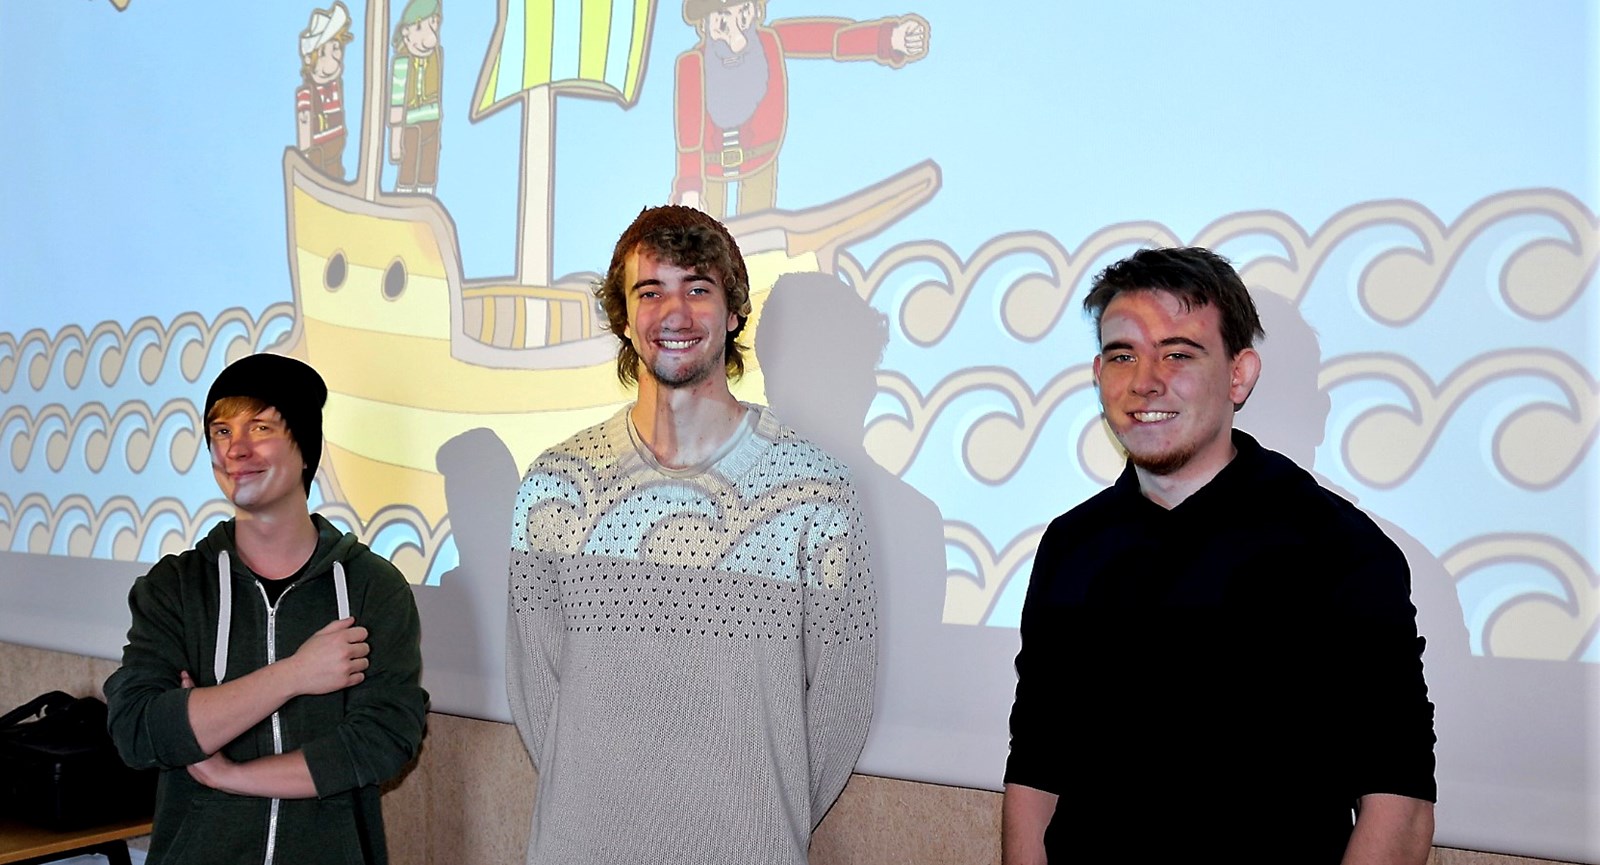 De tre Dania-Games studerende Henrik, Jonas og Daniels foran et skræmbillede af det øjetestspil, som de har udviklet